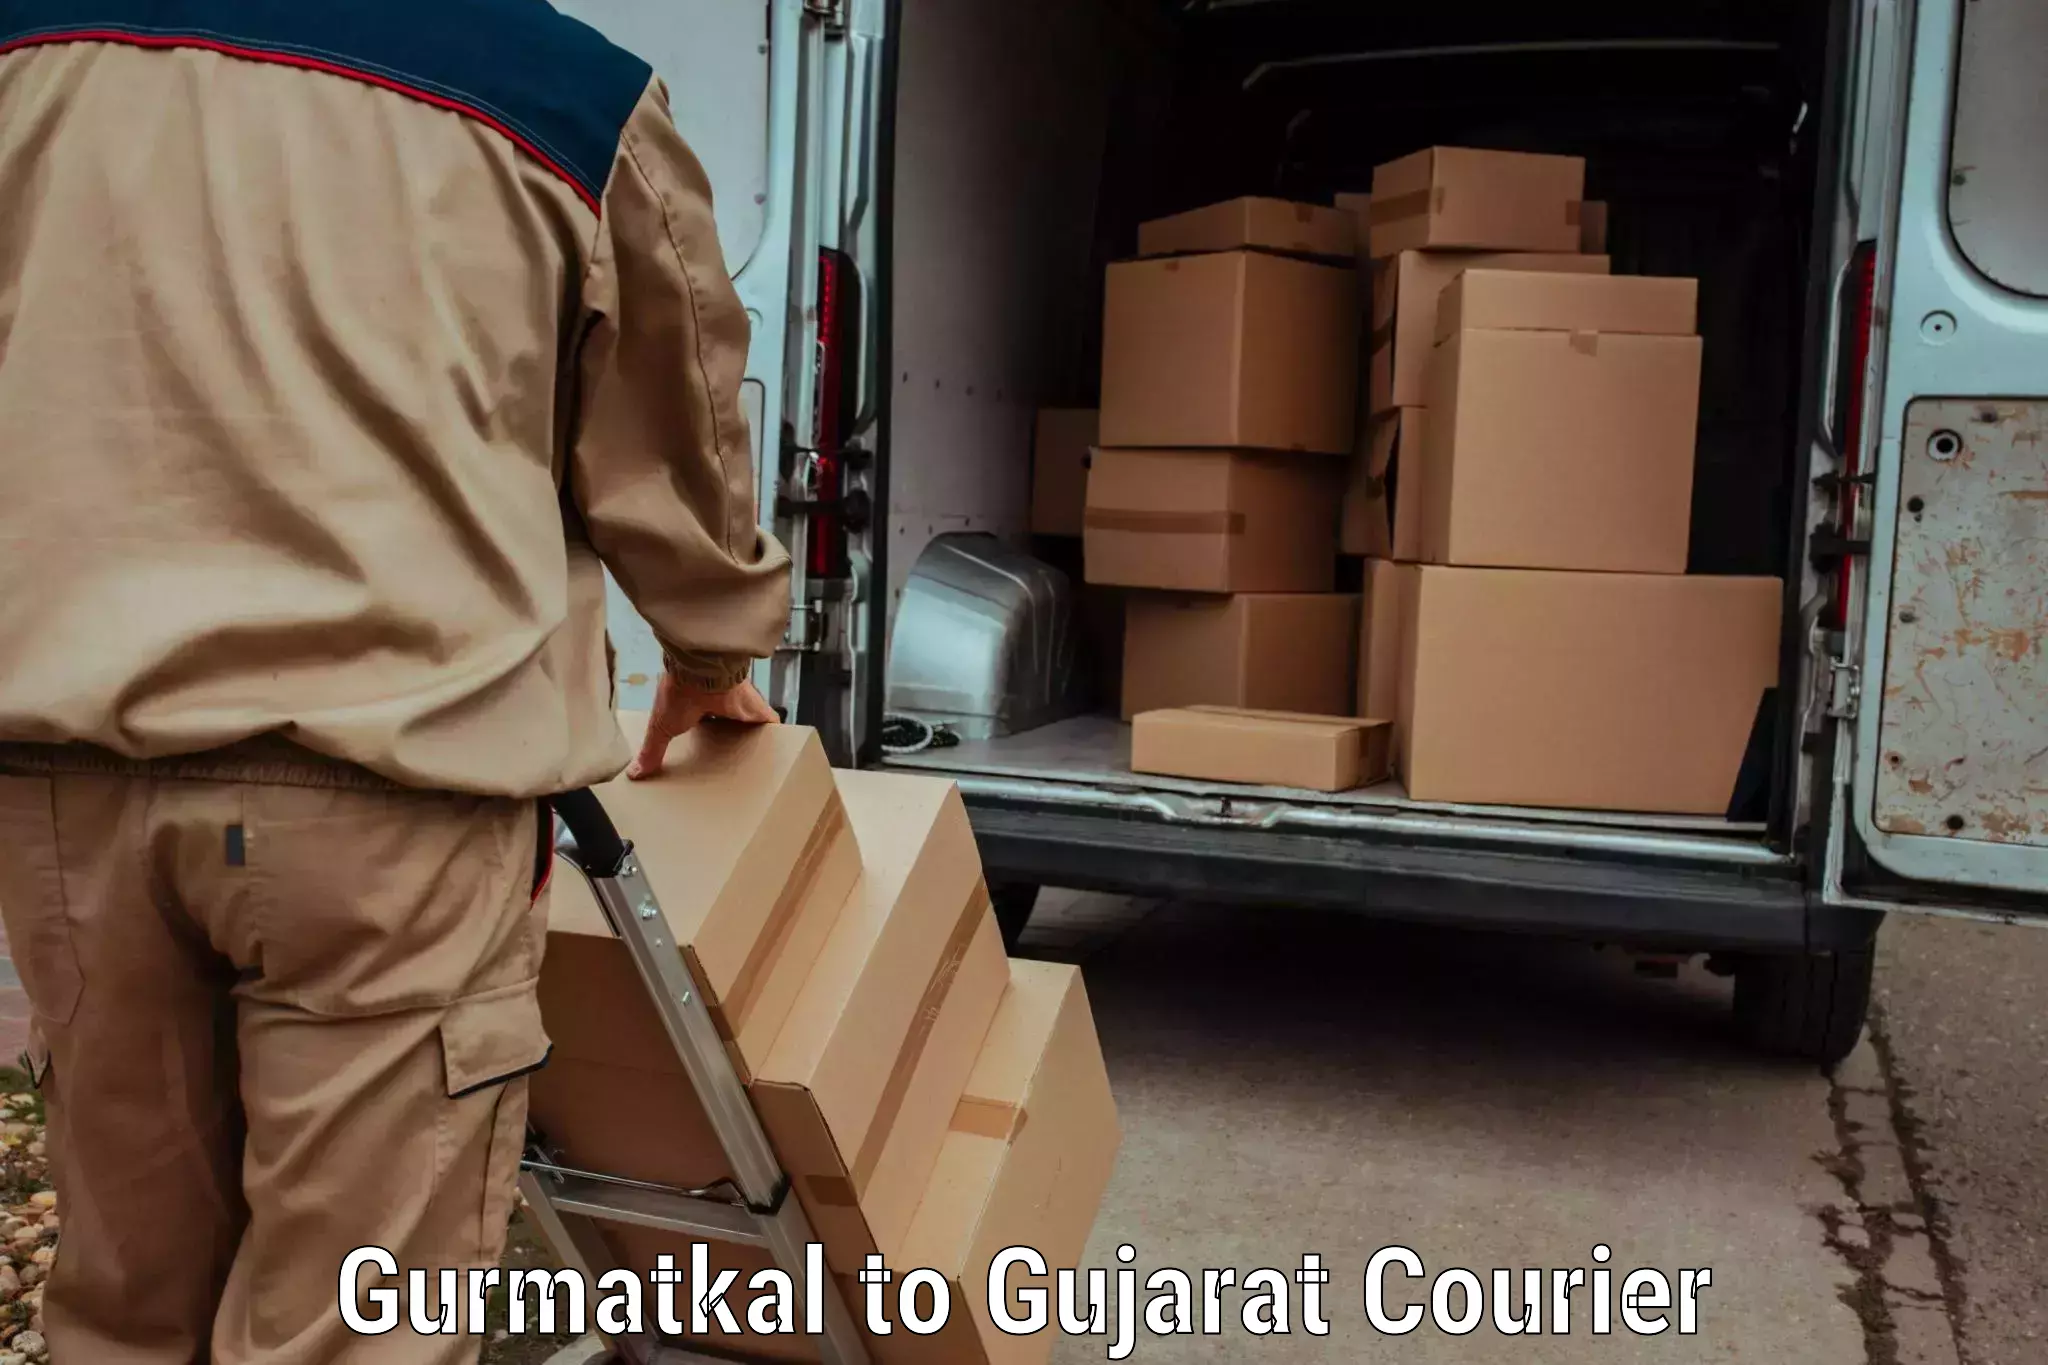 Next-day freight services Gurmatkal to Dediapada